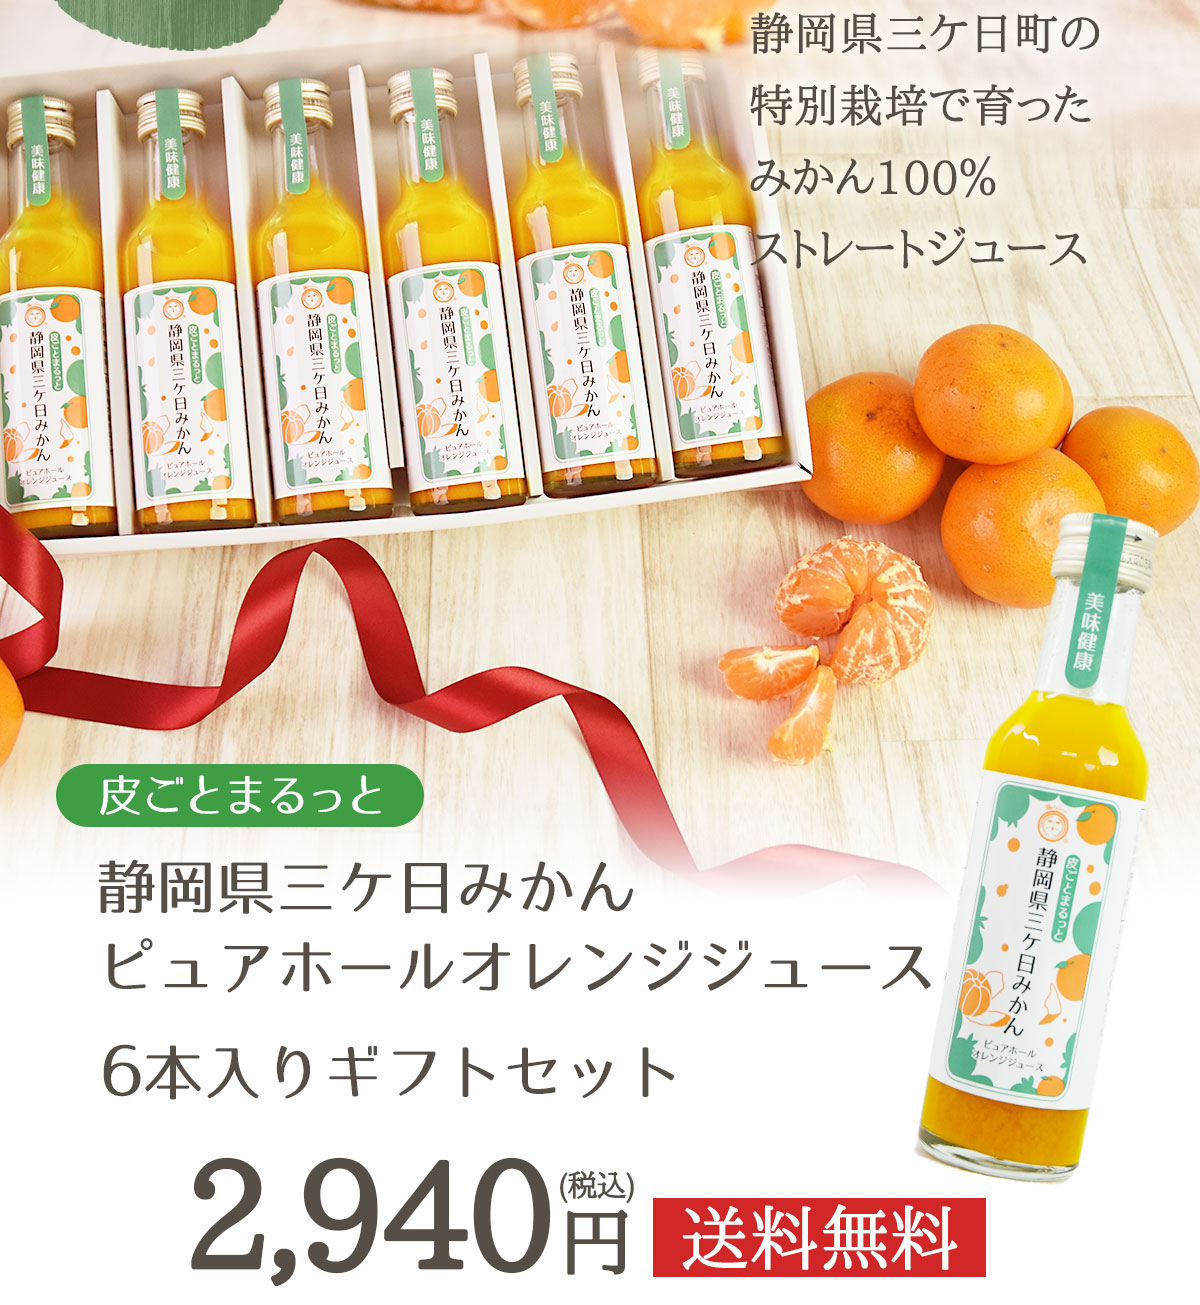 皮ごとまるっと 静岡県産三ケ日みかんピュアホールオレンジジュース